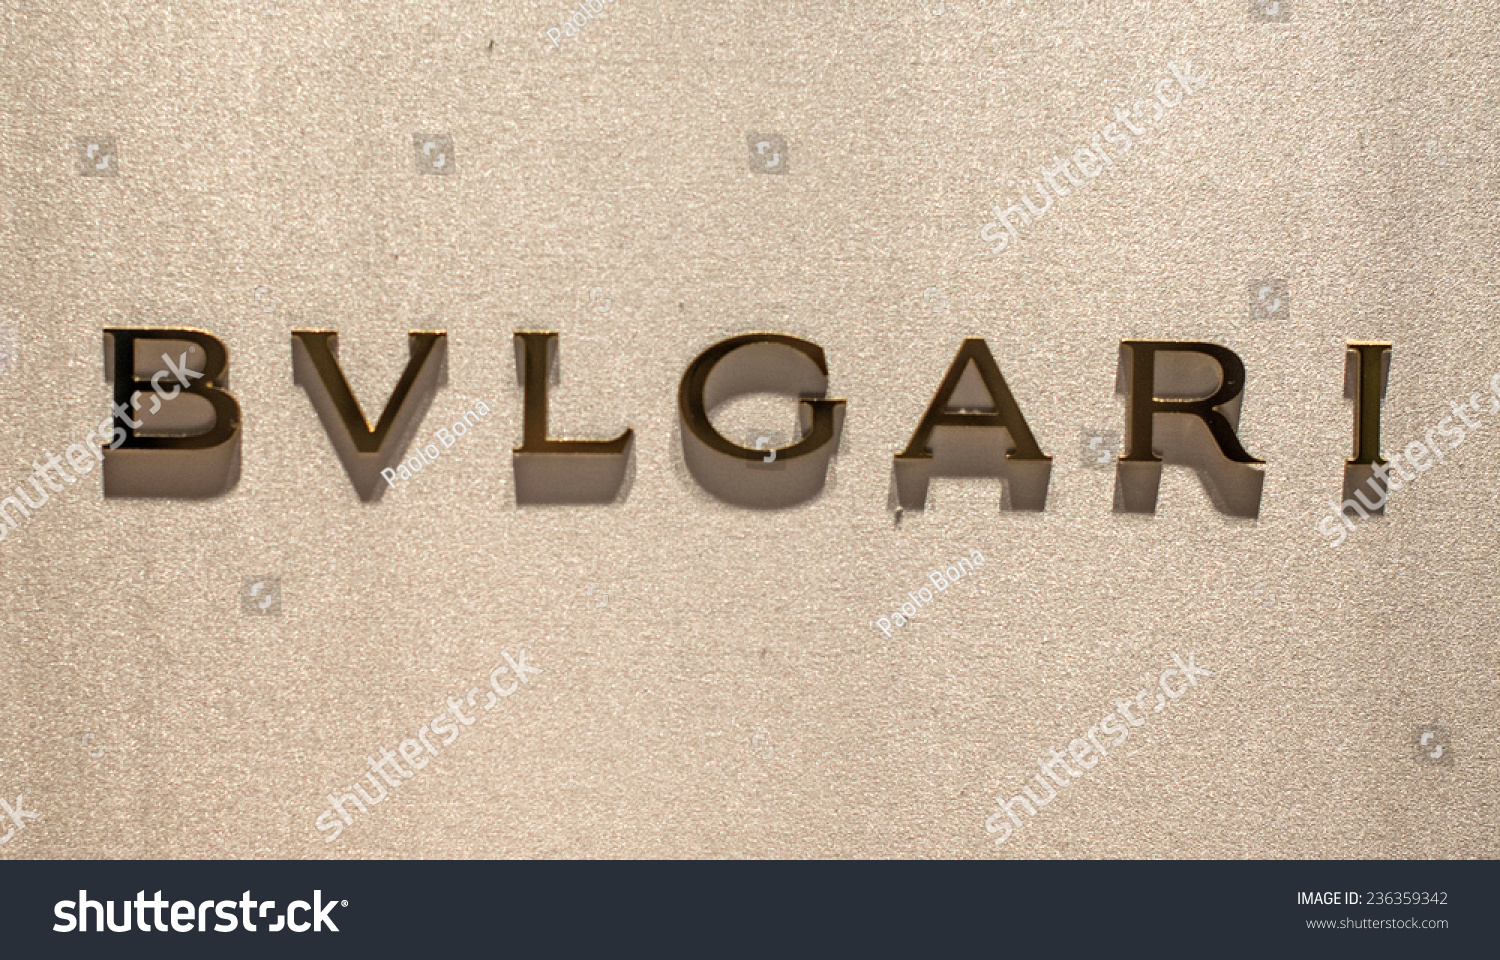 bvlgari brand name